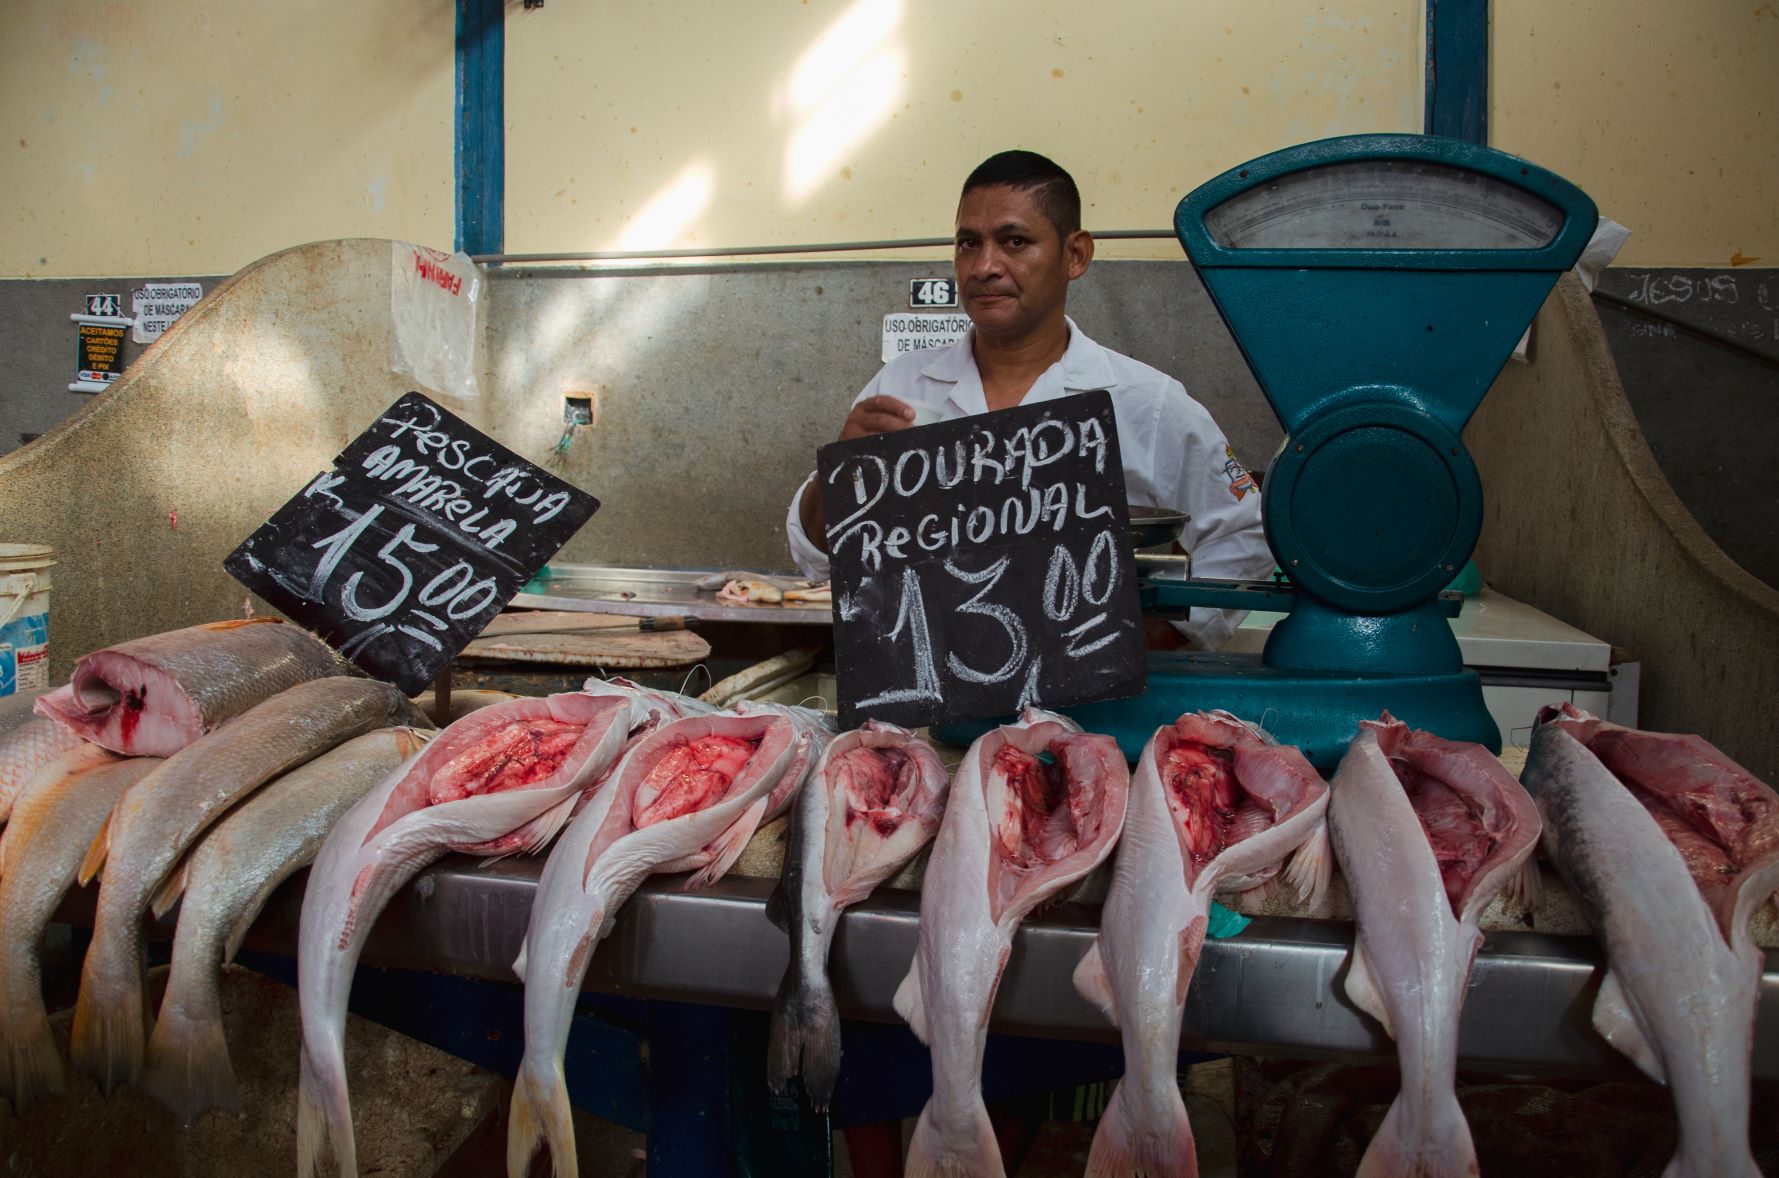 Venda de pescada-amarela, já sem grude, no mercado Ver-o-Peso de Belém: comércio milionário (Foto: Sarita Reed/DIálogo Chino)